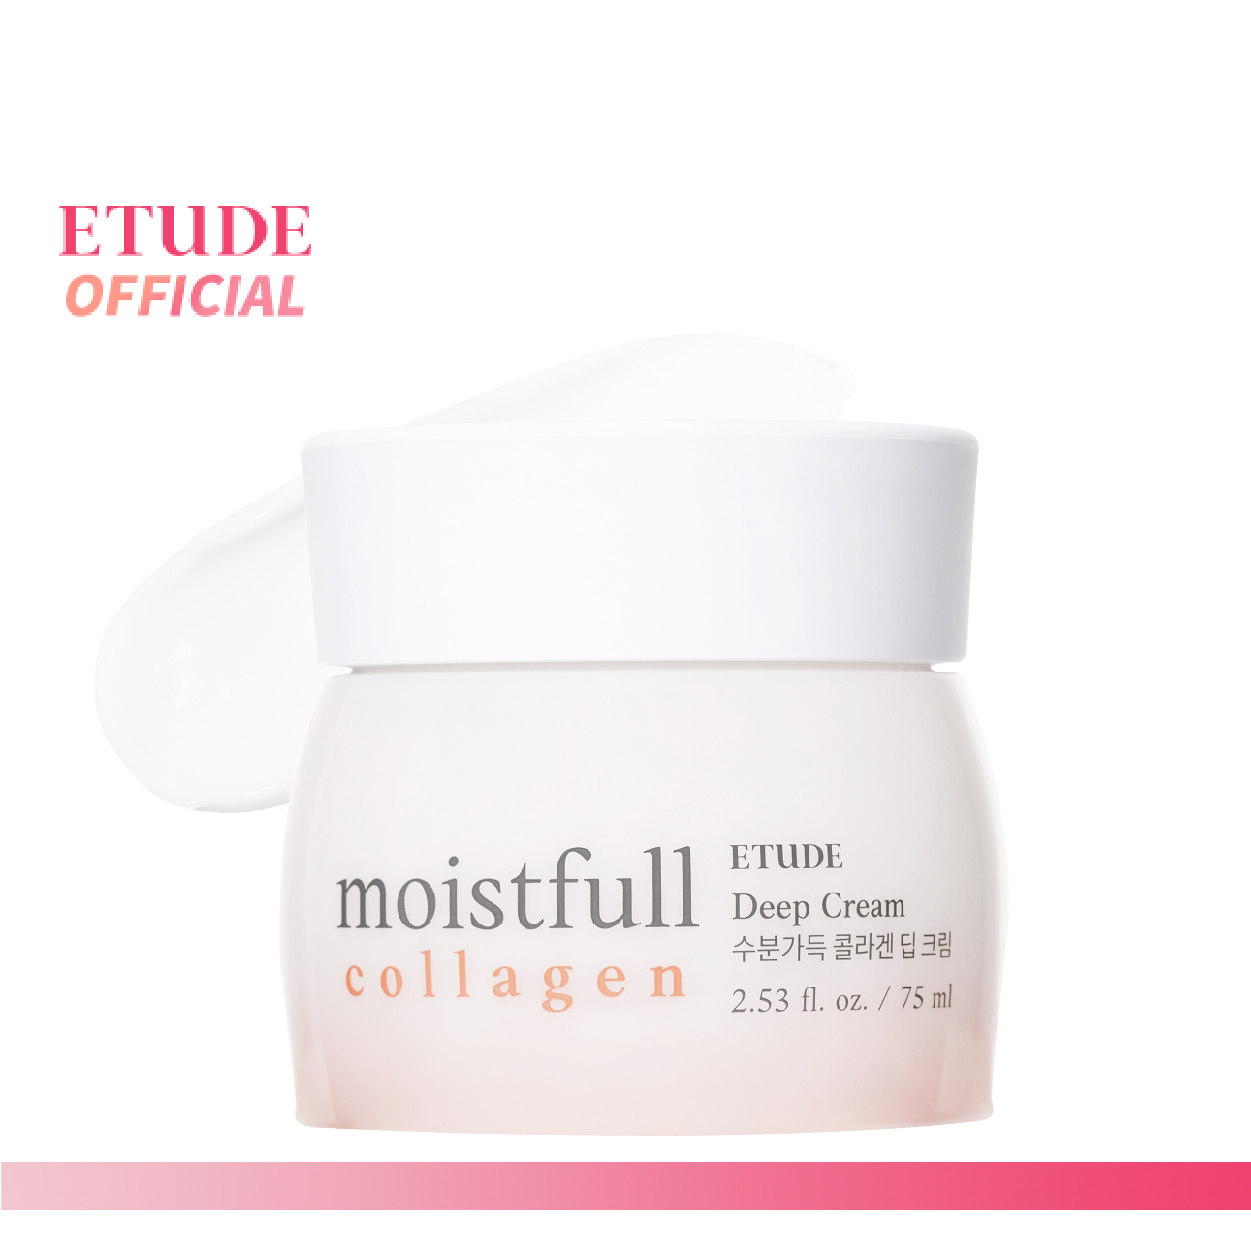 ราคา ETUDE Moistfull Collagen Deep Cream (75 ml) อีทูดี้ ครีม